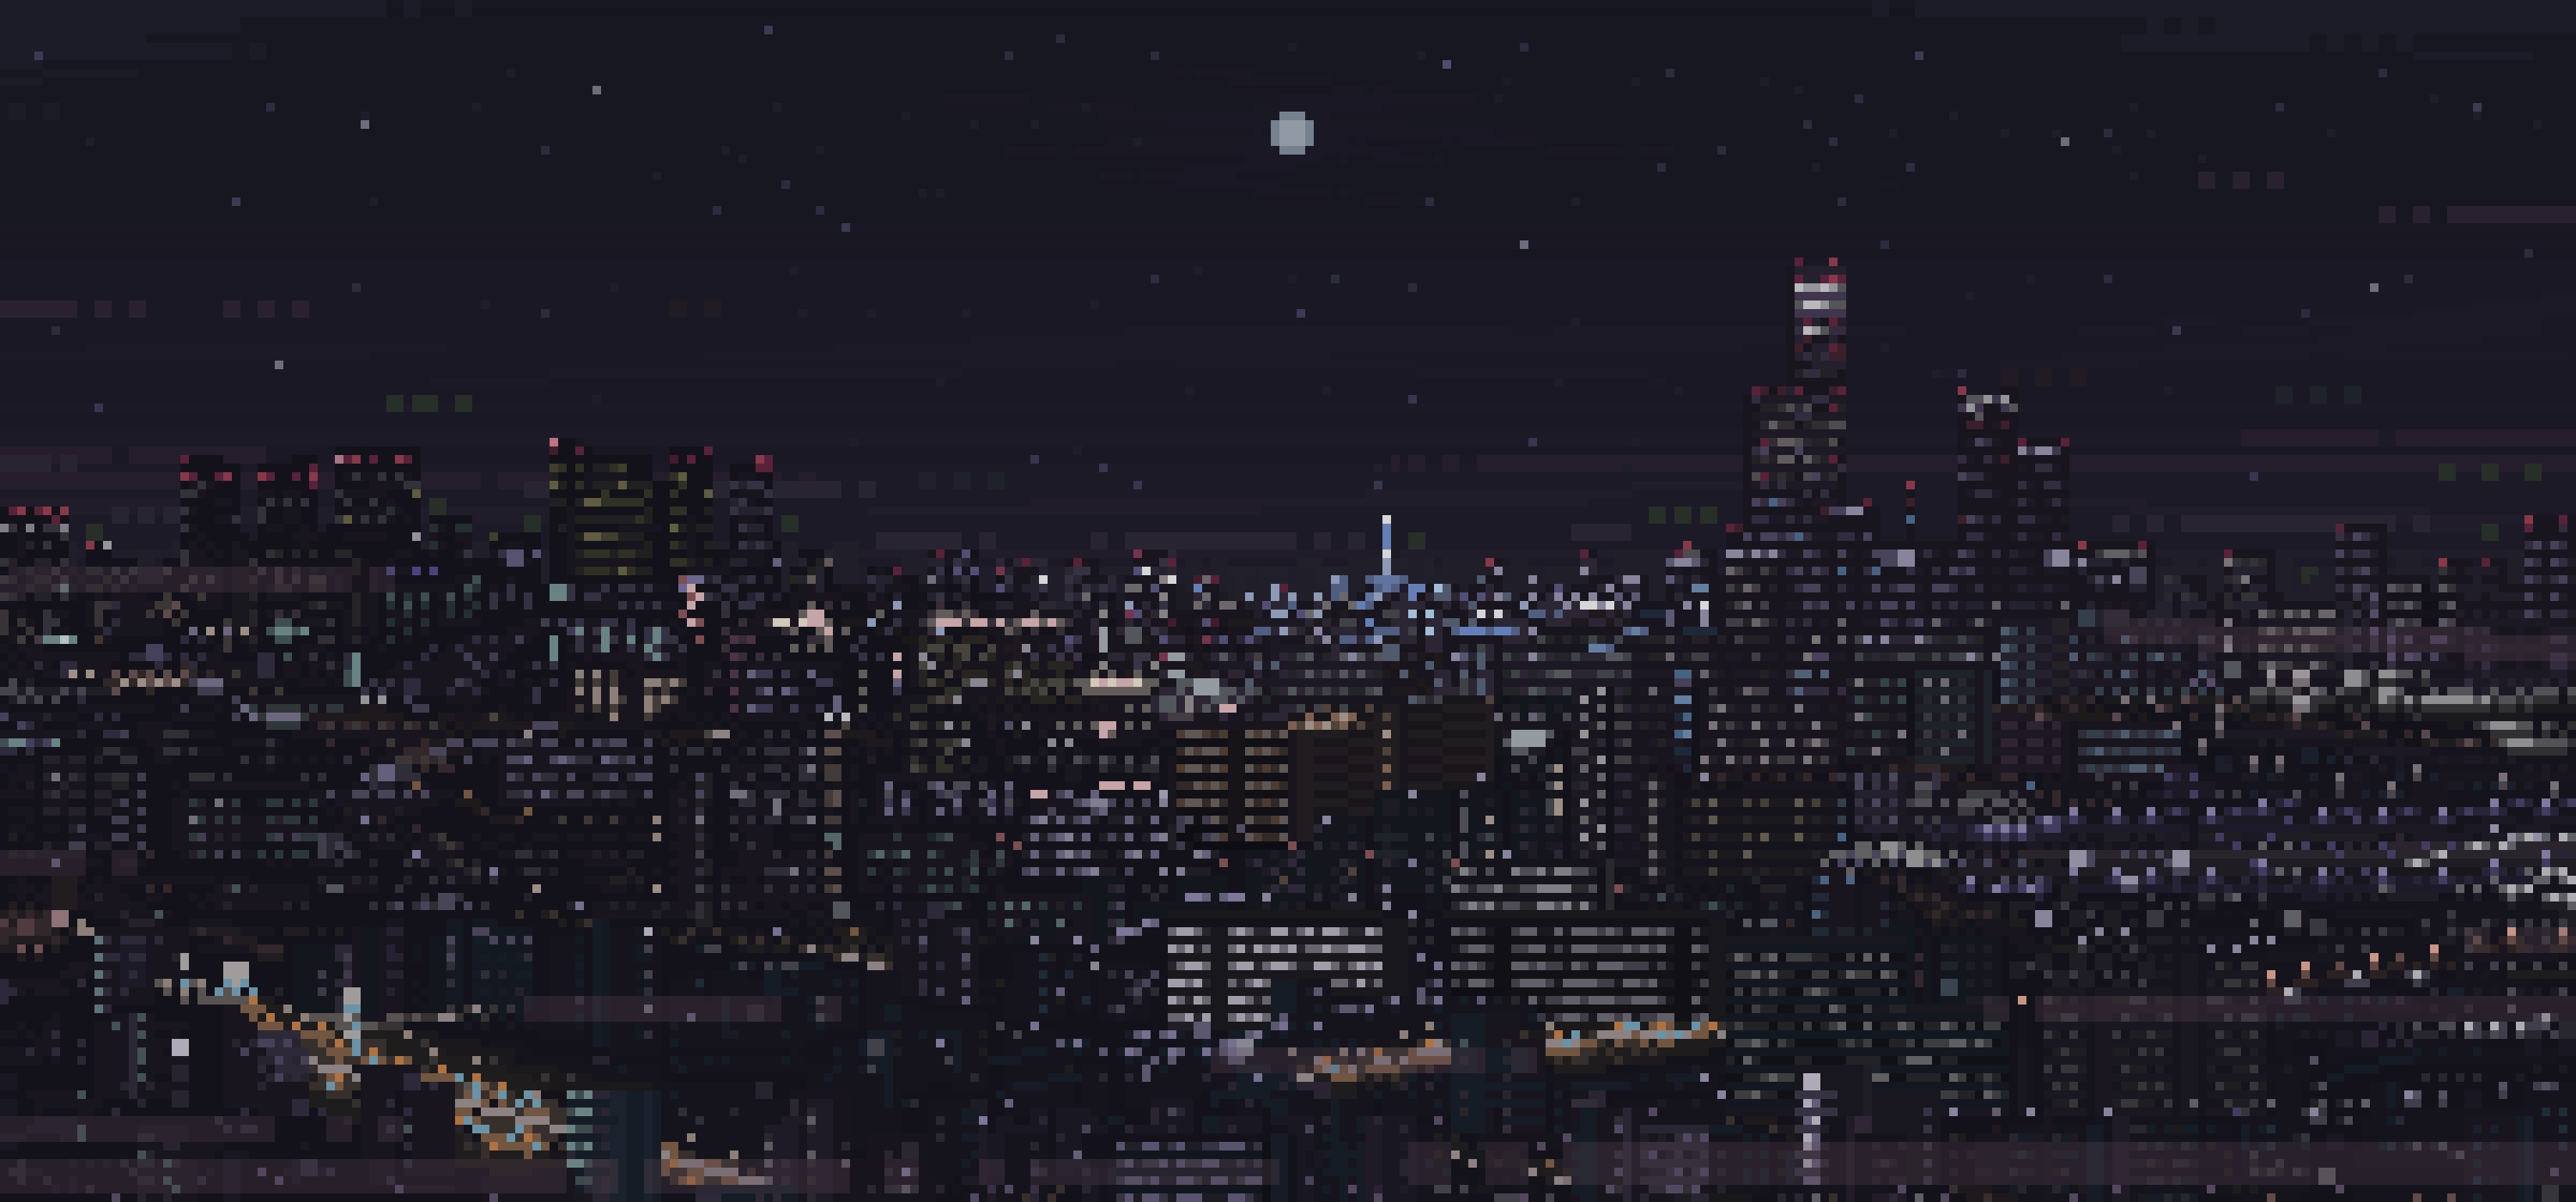 Pixel Art City Night Wallpaper - vrogue.co